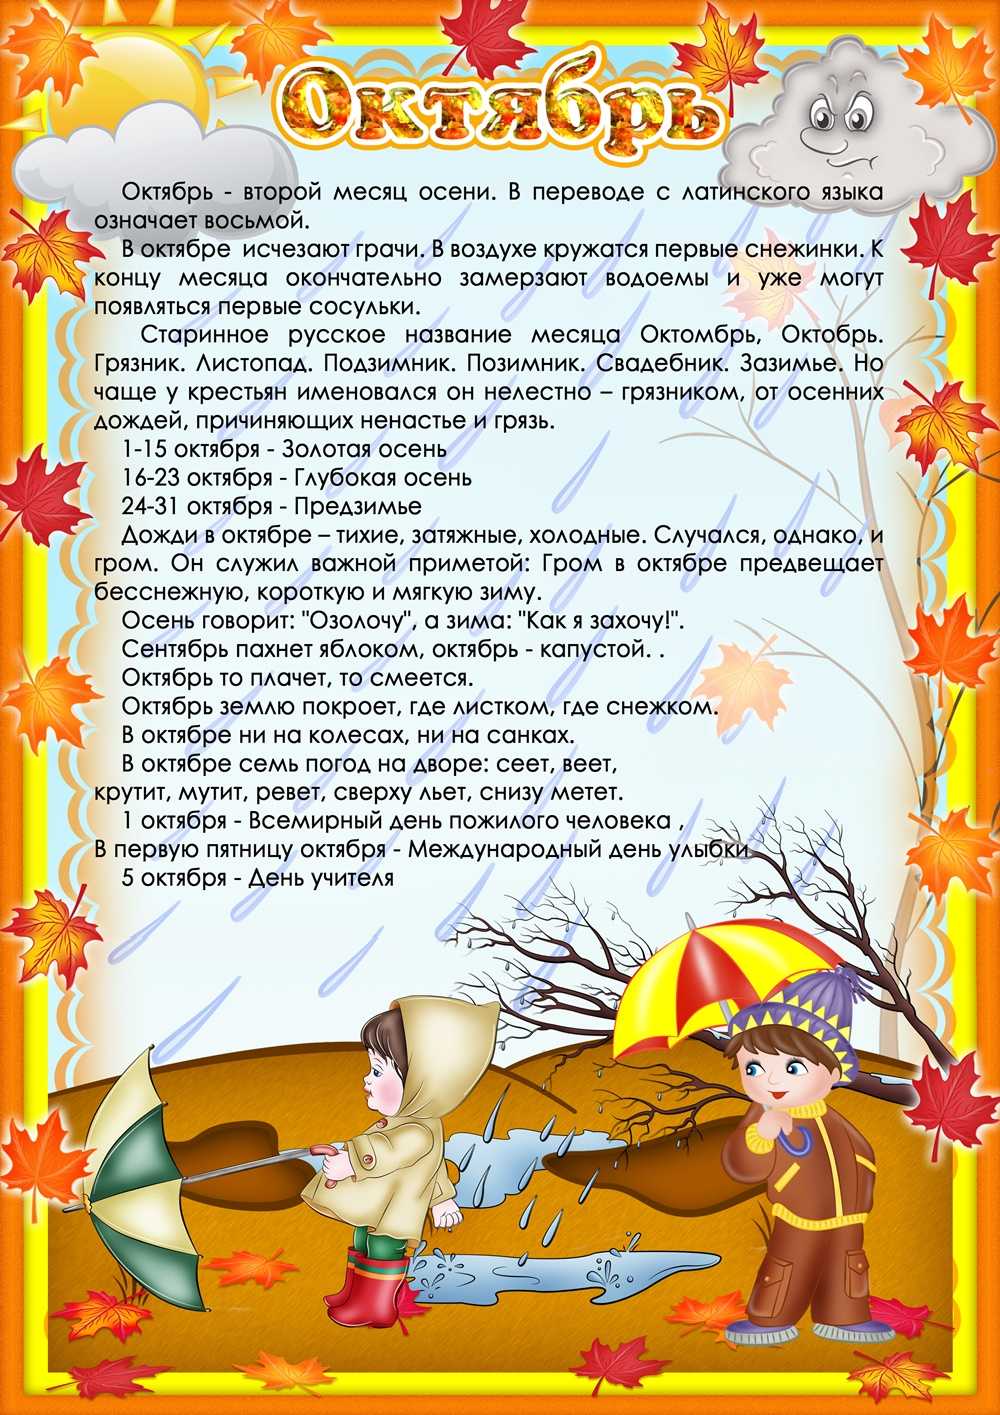 Папка - передвижка Осень: 3 папки - передвижки для детского сада с картинками, стихами и заданиями для детей про осень Скачать бесплатно